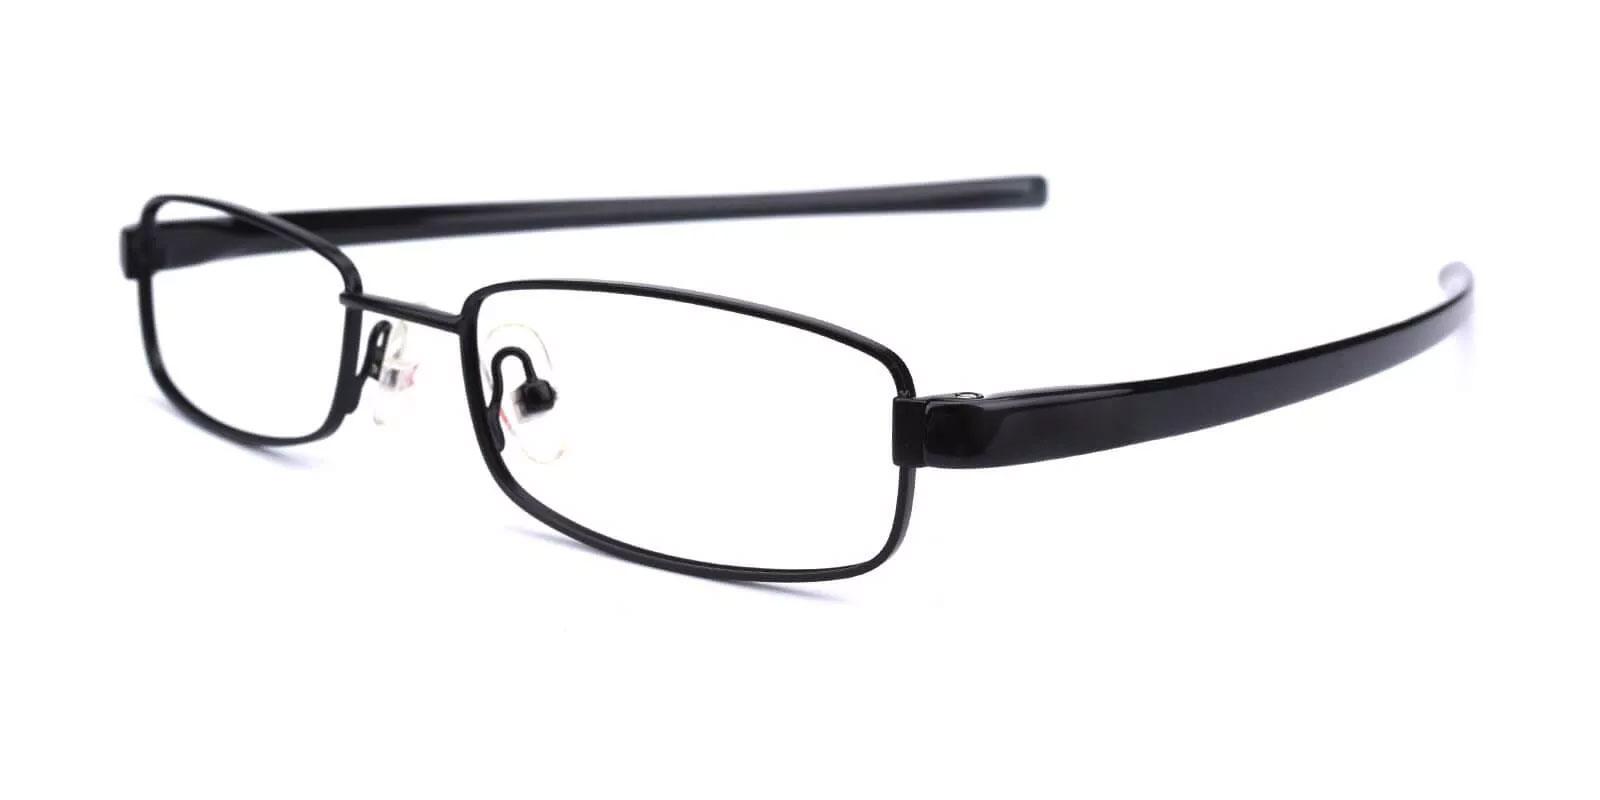 Samuel Black Metal Eyeglasses , Lightweight , NosePads Frames from ABBE Glasses